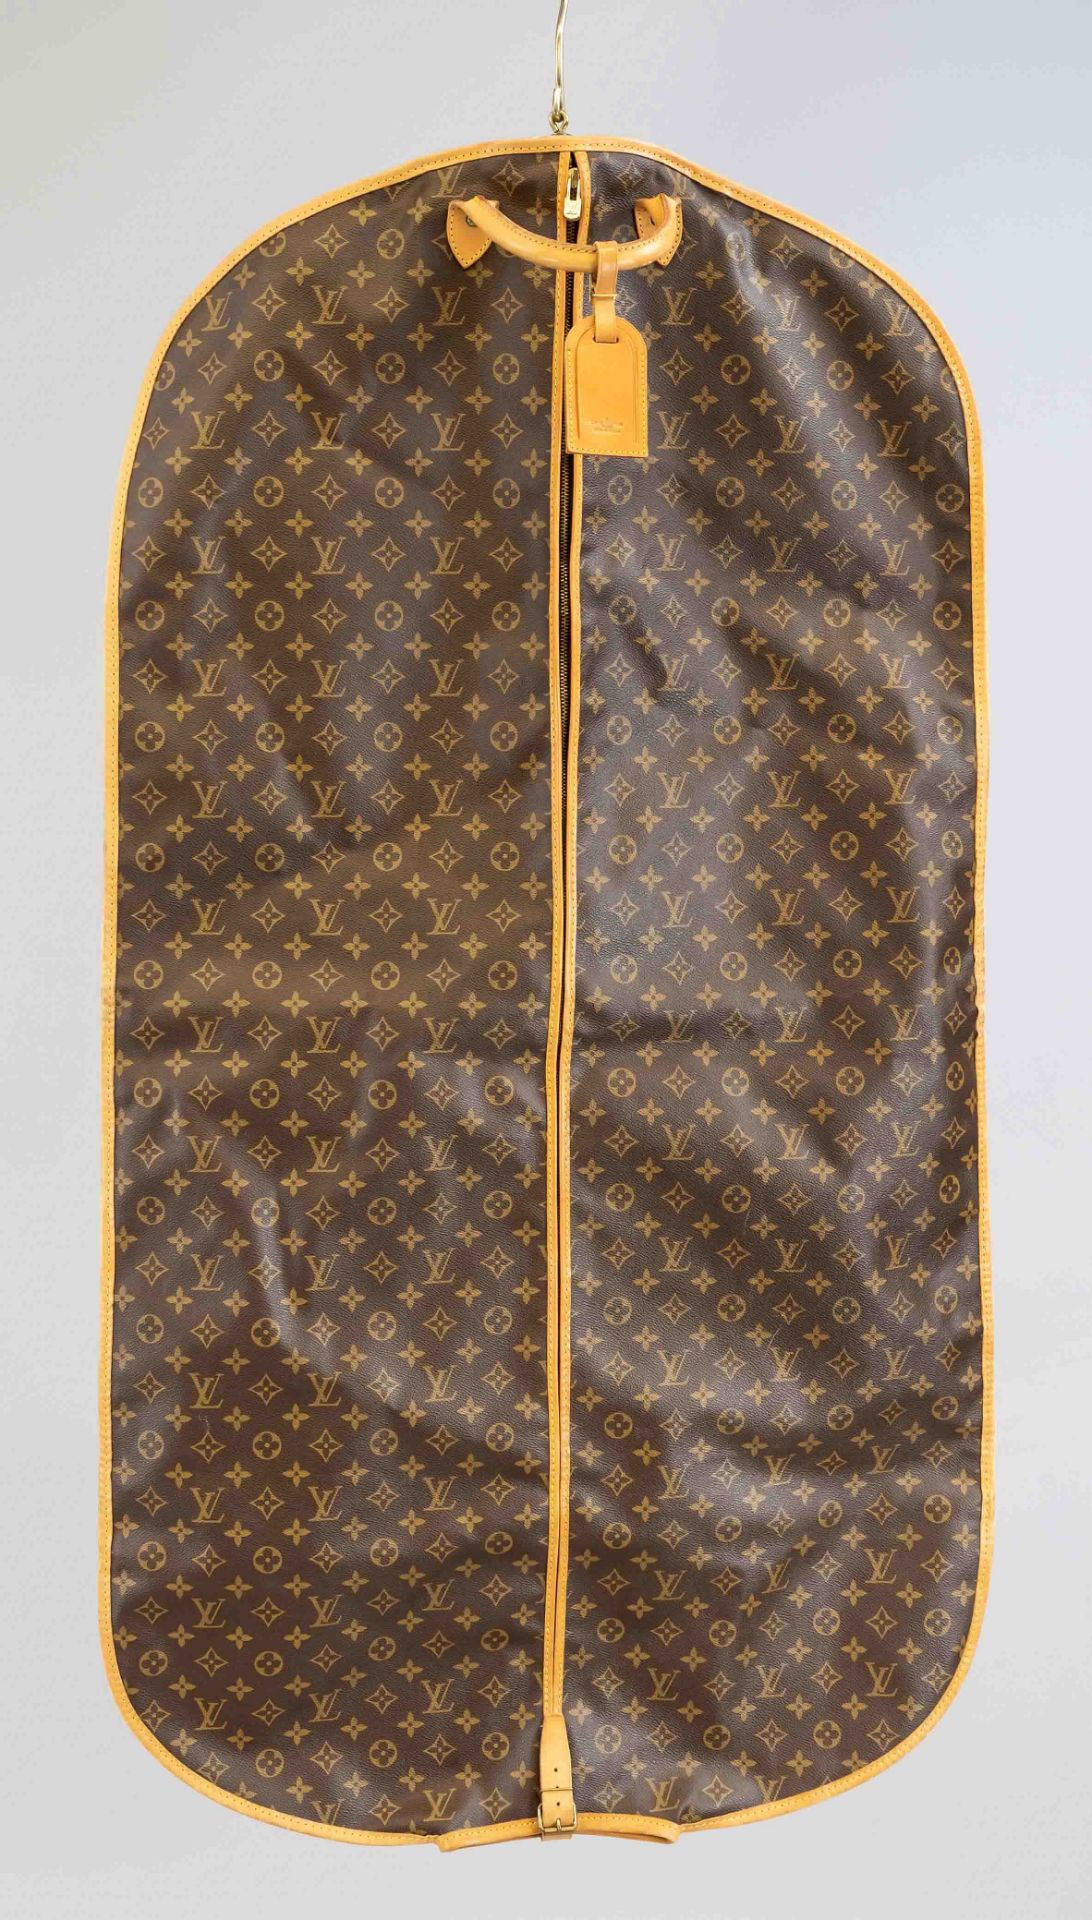 Louis Vuitton, Vintage Monogram Canvas garment bag, rubberized cotton fabric in classic logo print